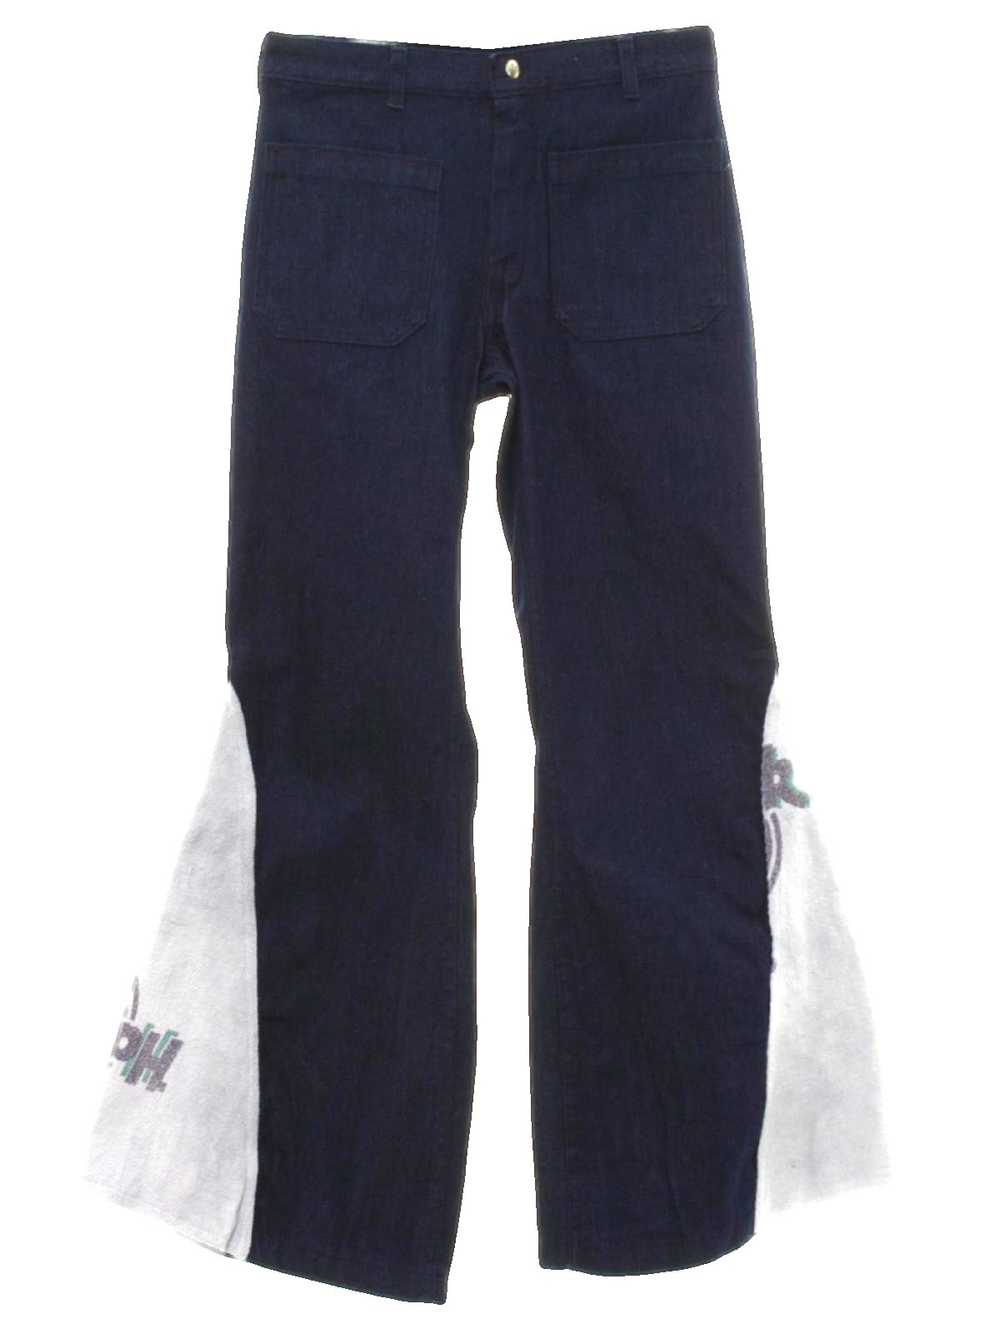 1970's Seafarer Mens Elephant Bellbottom Jeans Pants - Gem